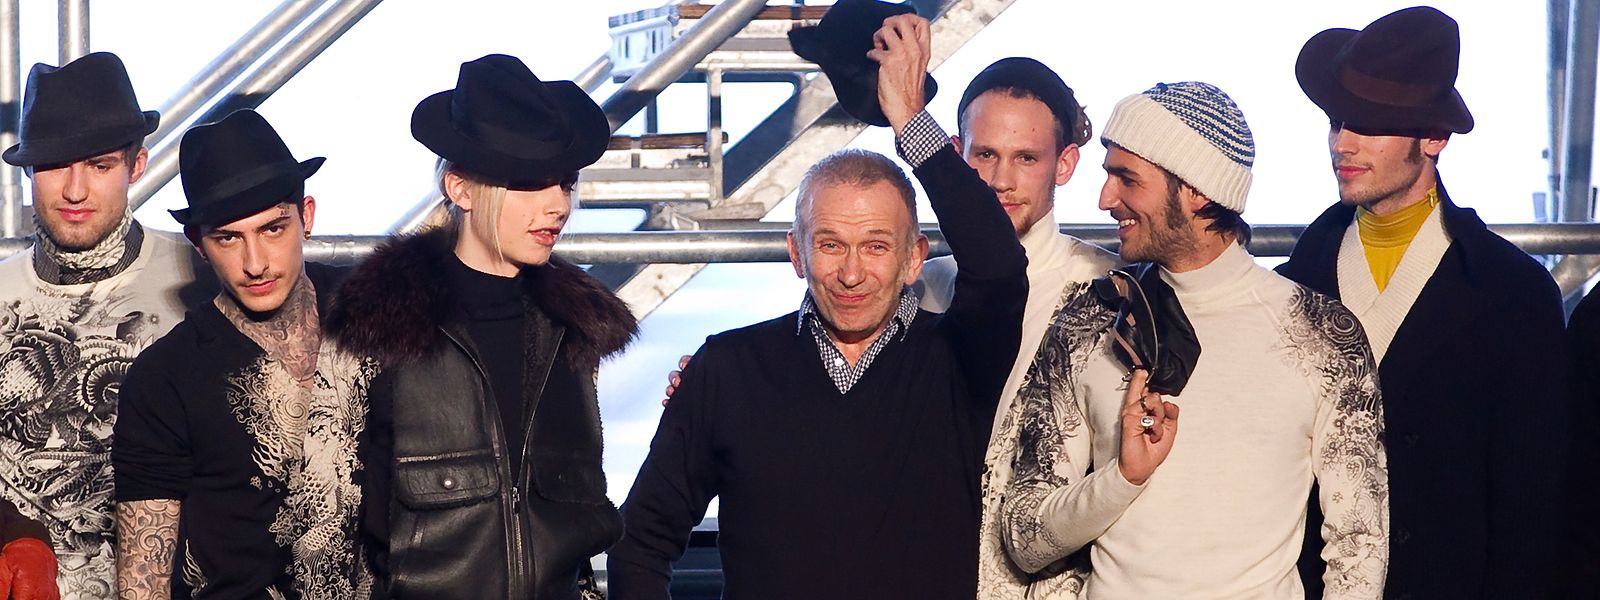 Jean Paul Gaultier (M.) nach seiner Show während der Pariser Modewoche Herbst/Winter 2012/2013.